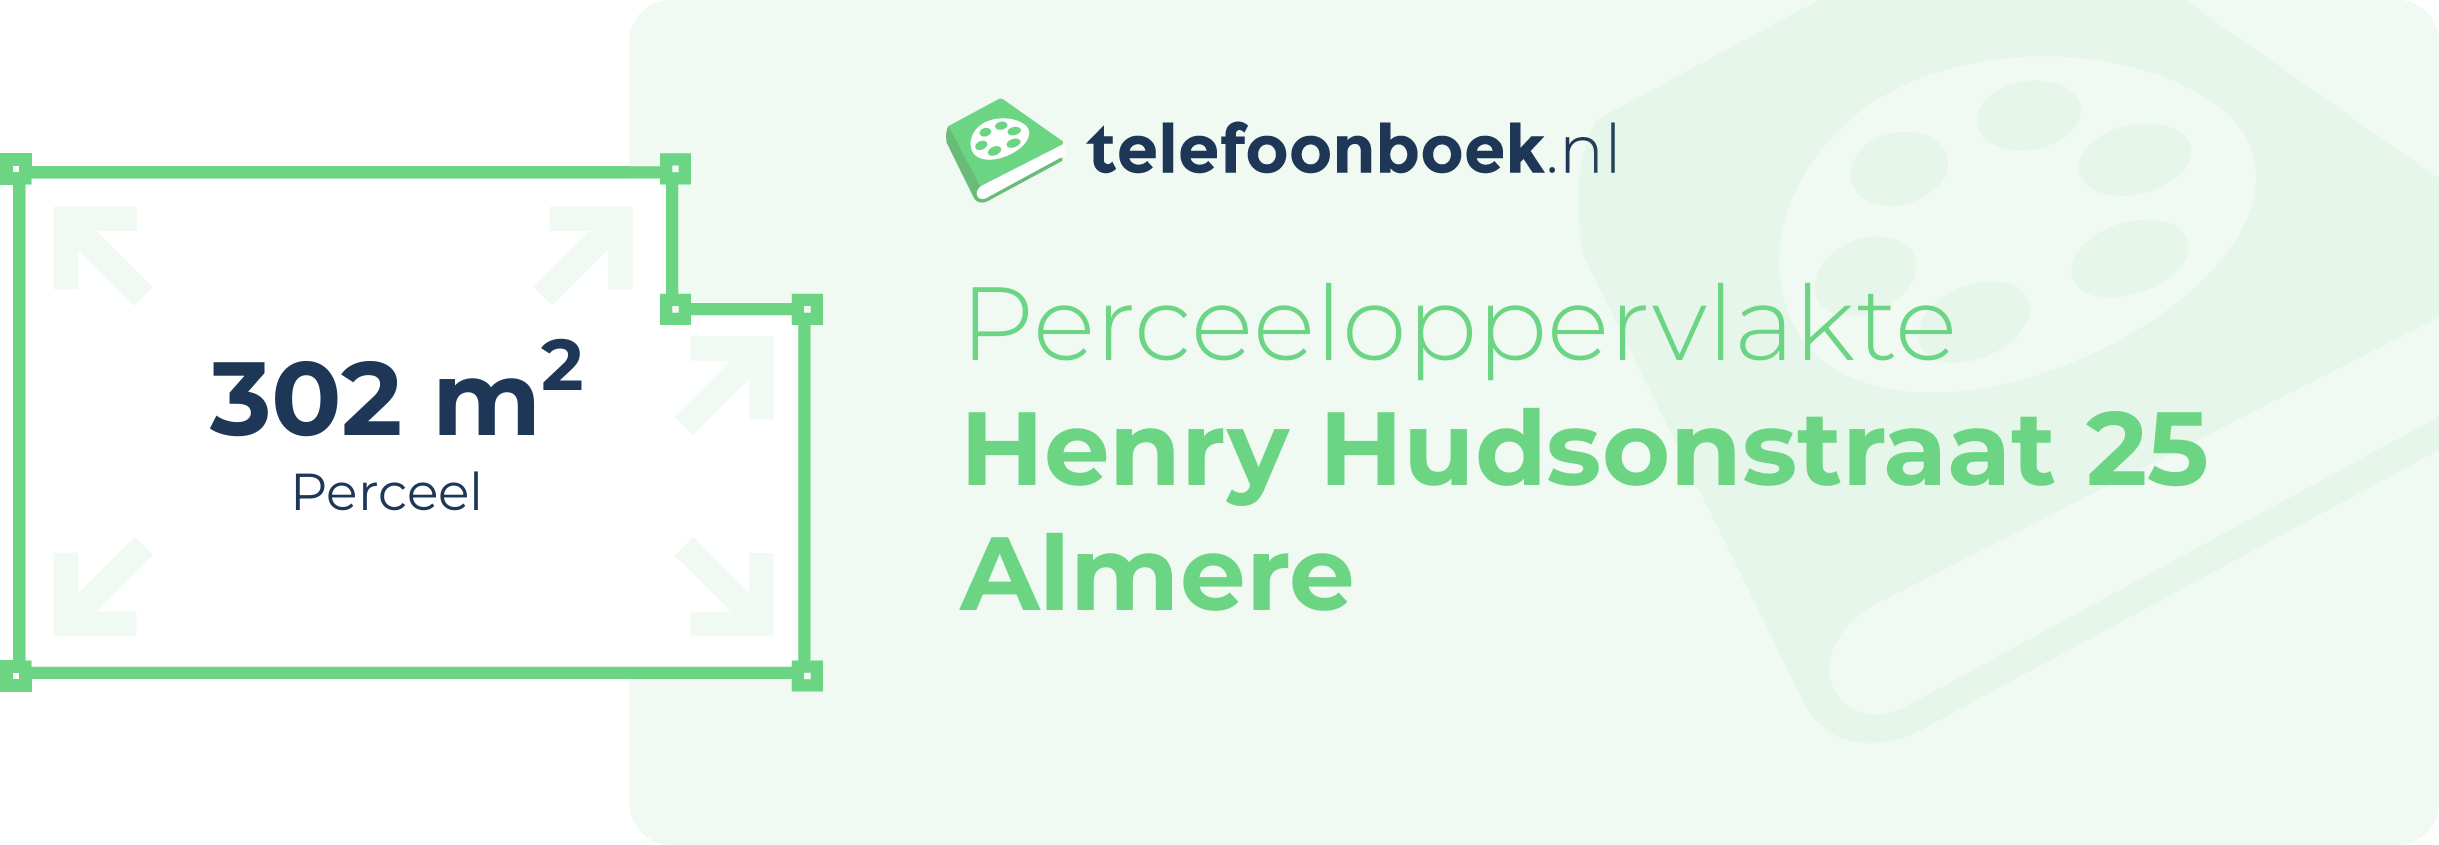 Perceeloppervlakte Henry Hudsonstraat 25 Almere